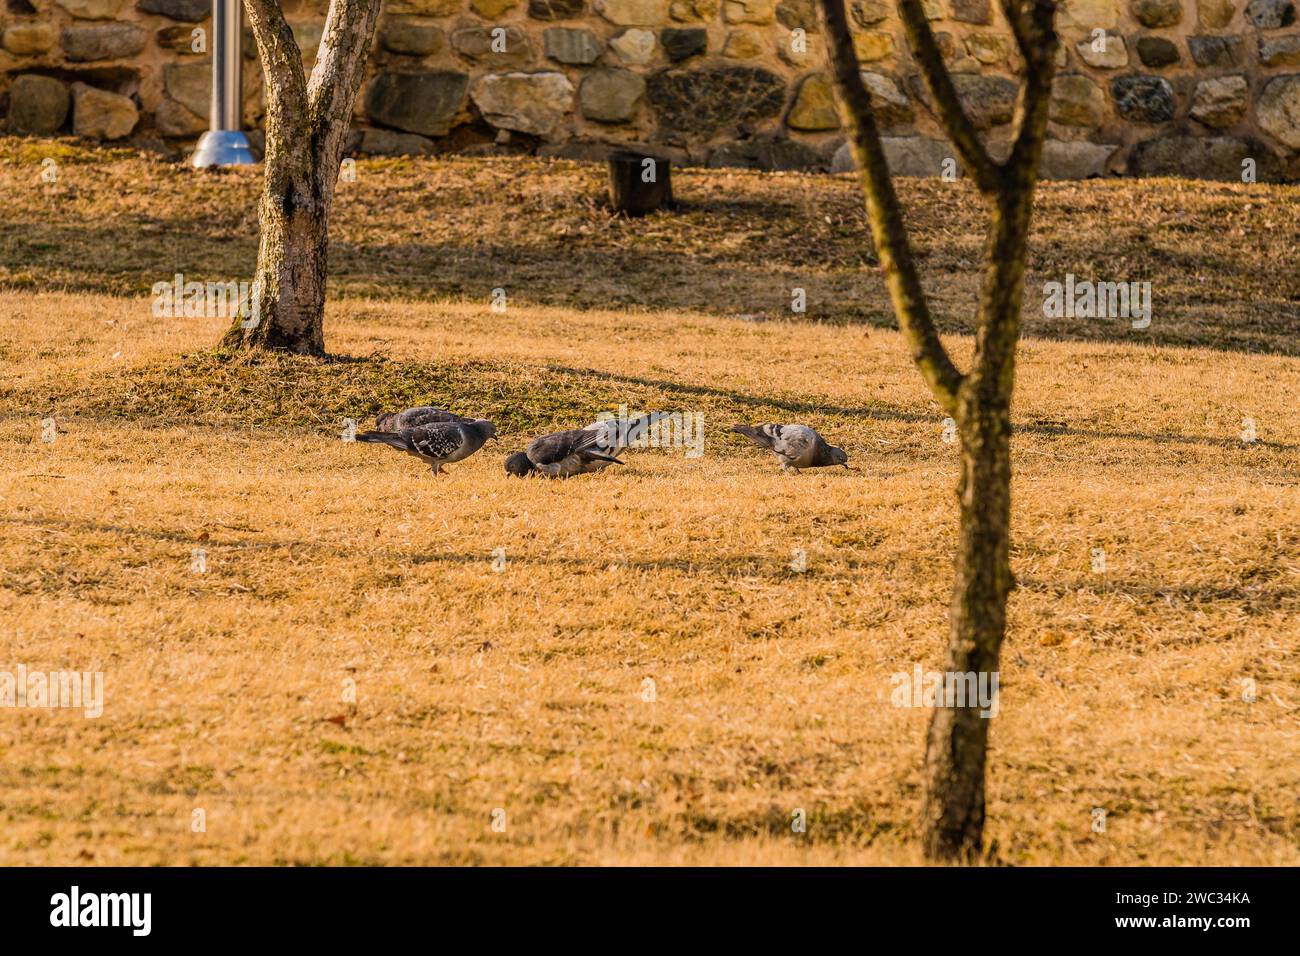 Stormo di piccioni a terra che si nutrono in un parco in una mattinata di sole Foto Stock